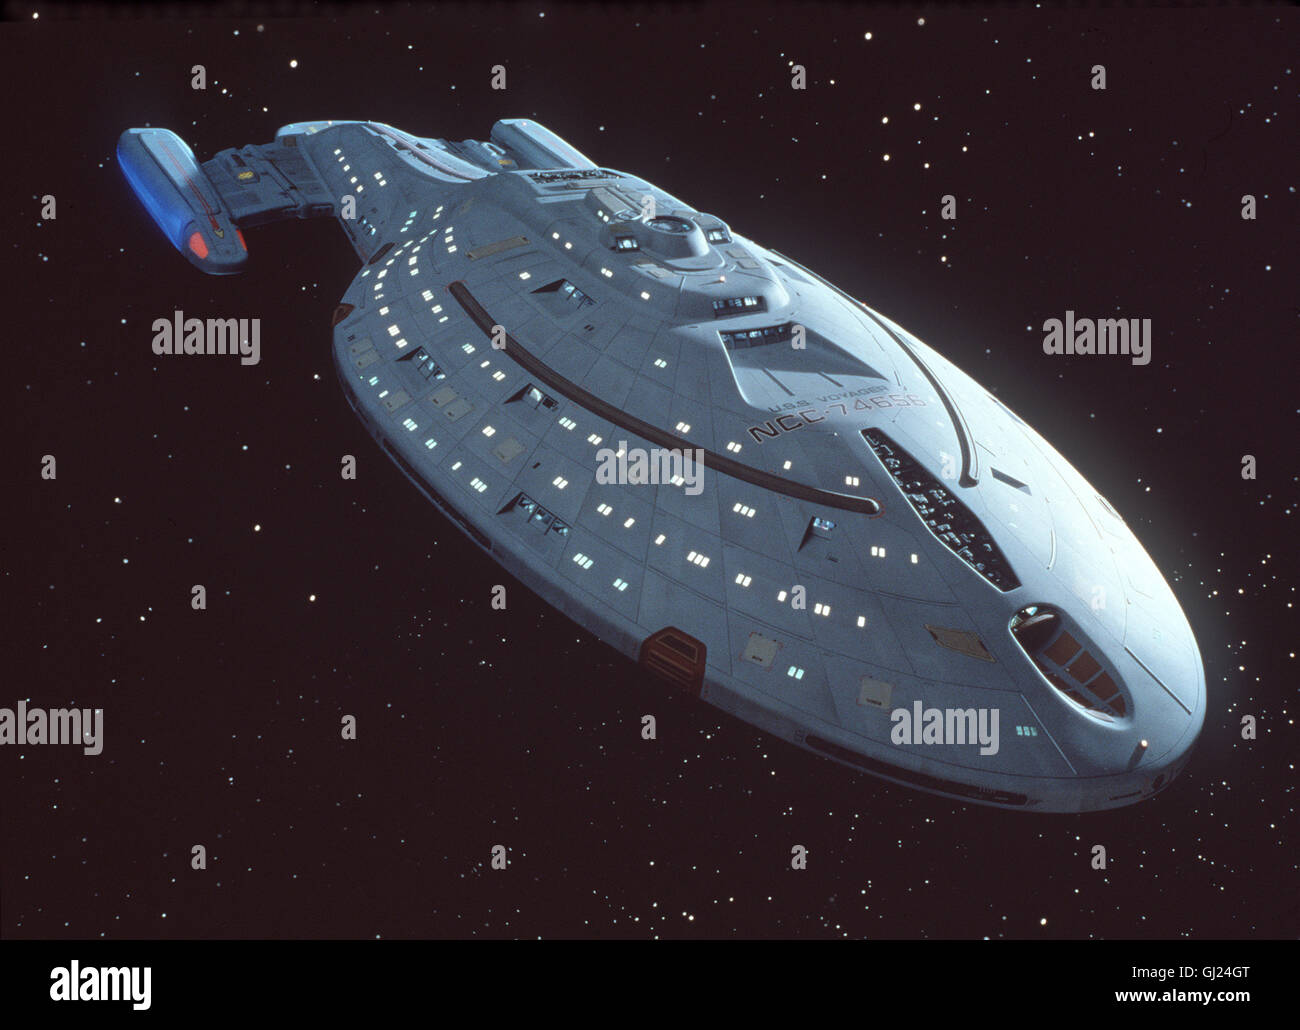 Star Trek - Raumschiff Voyager Bild: RAUMSCHIFF VOYAGER aka. Star Trek:  Voyager Stock Photo - Alamy